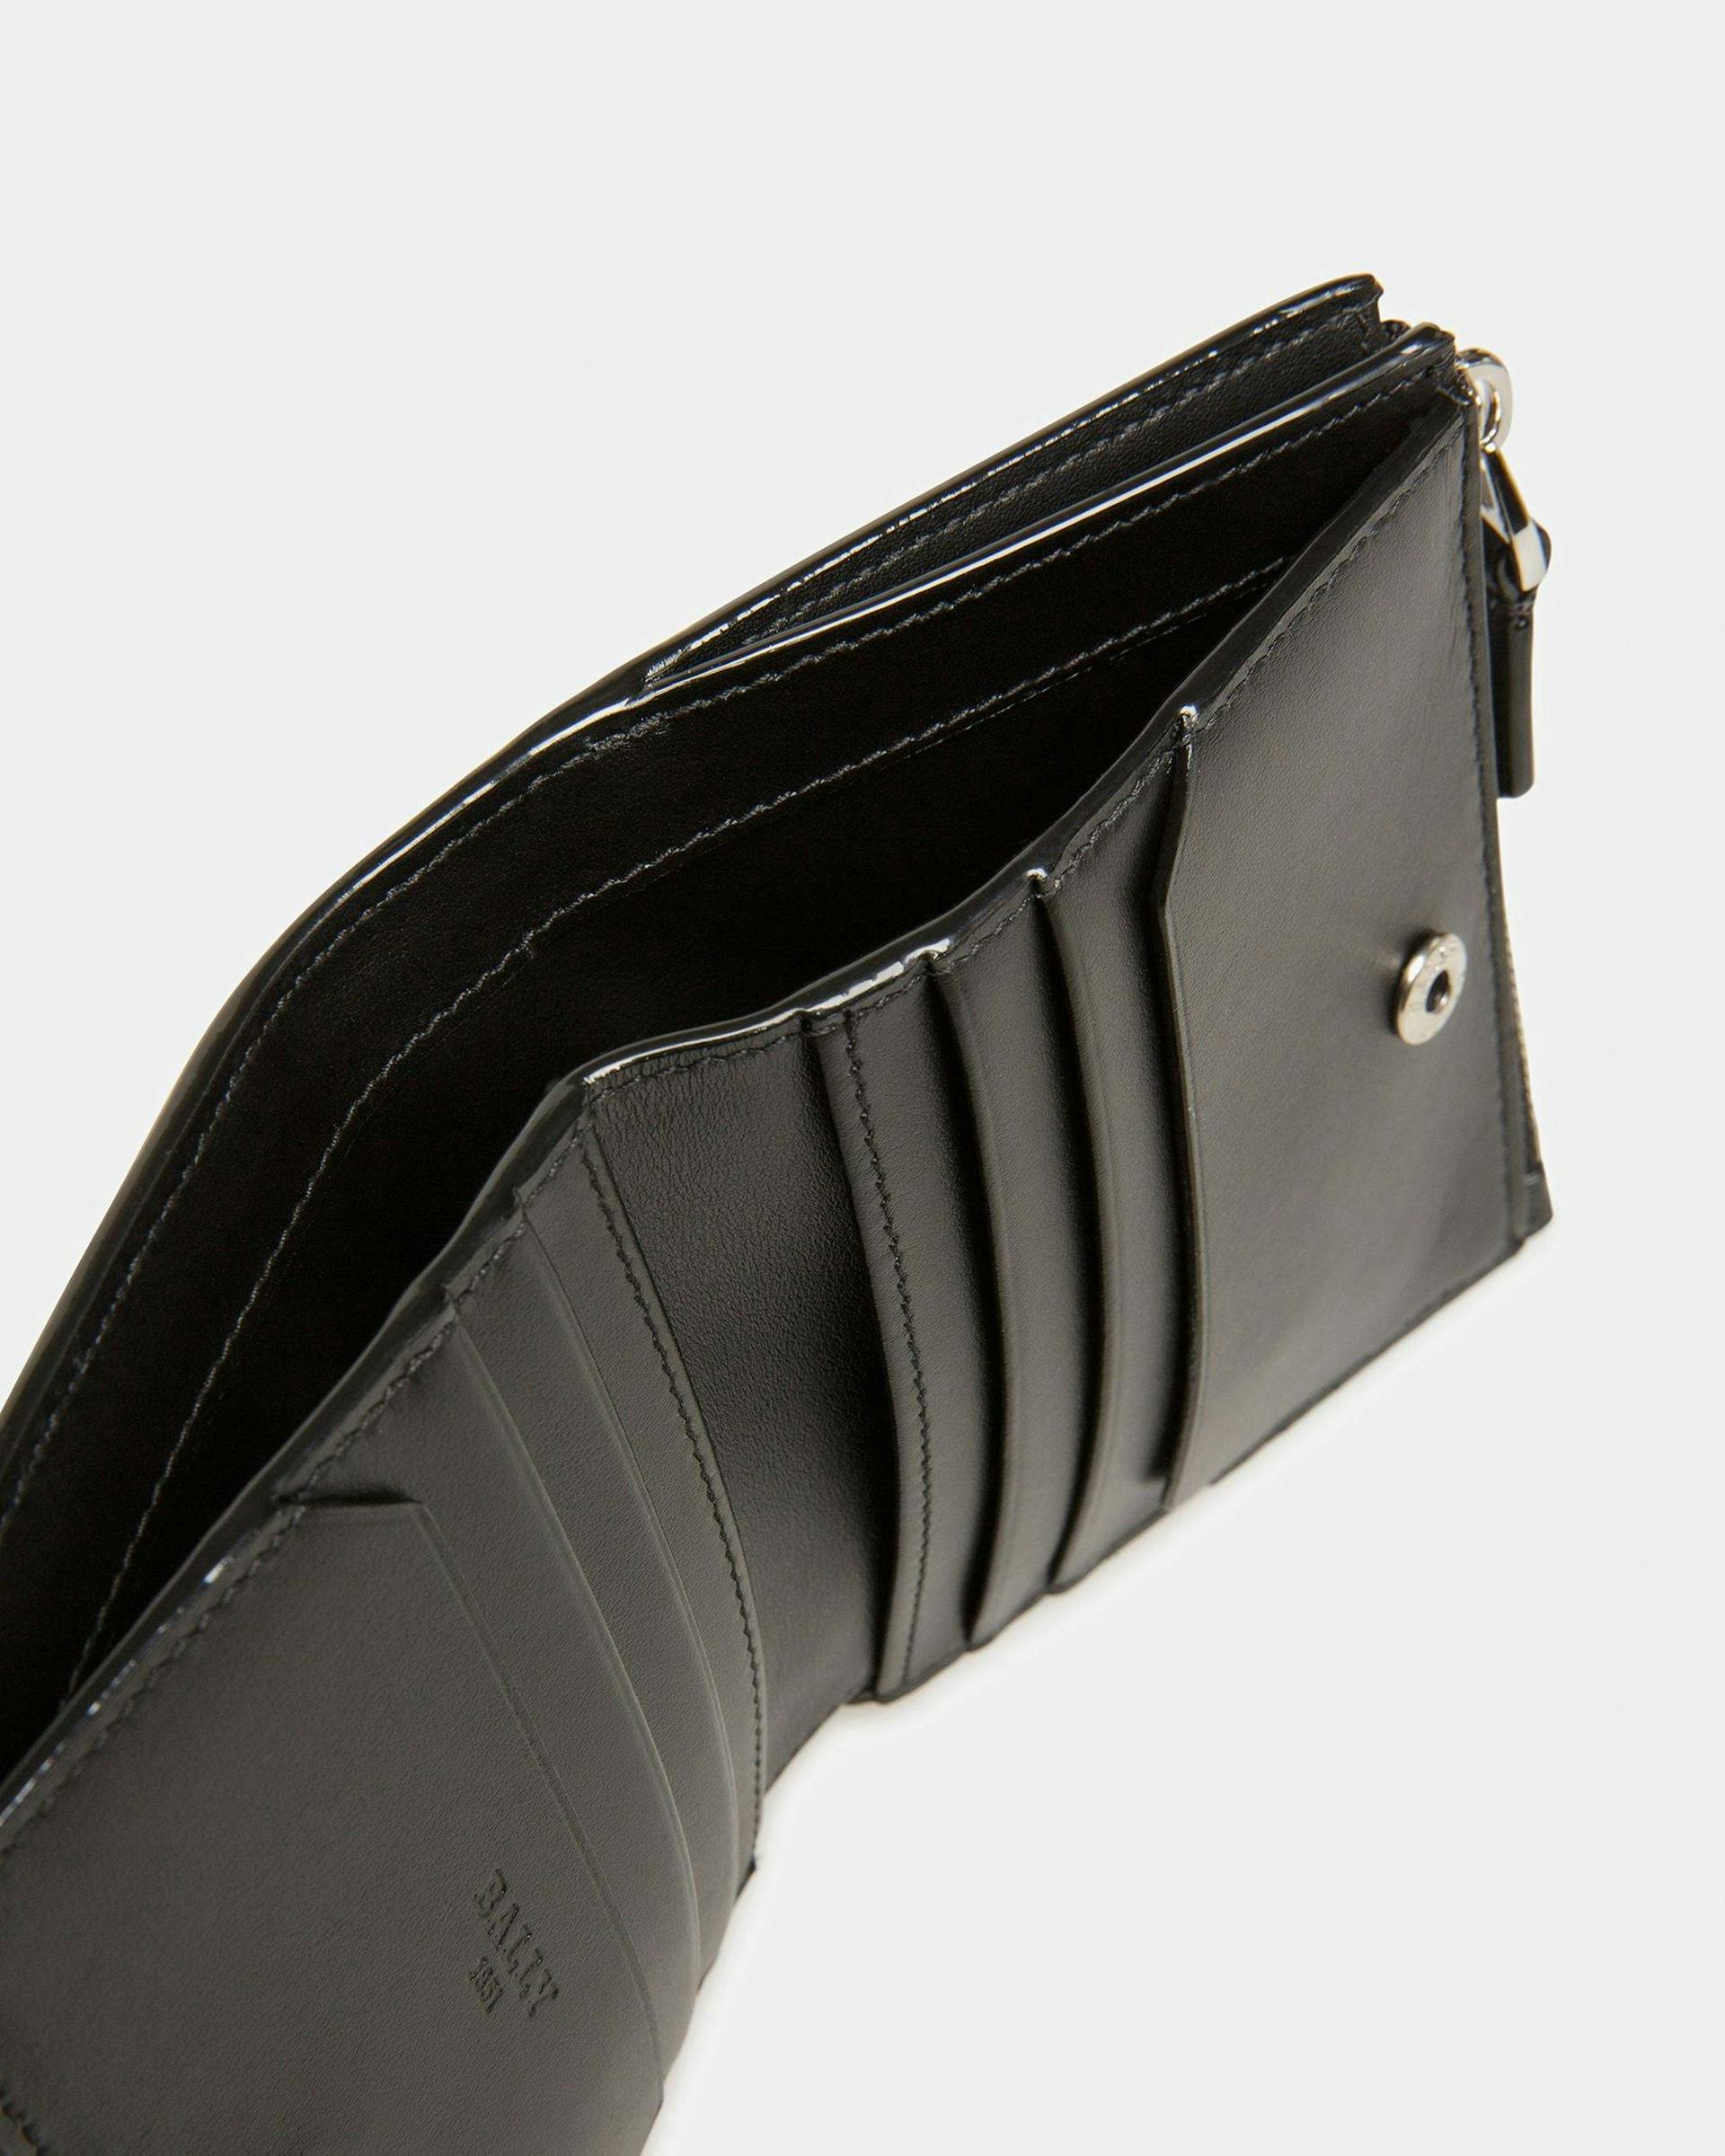 Axeel Leather Wallet In Black - Women's - Bally - 04